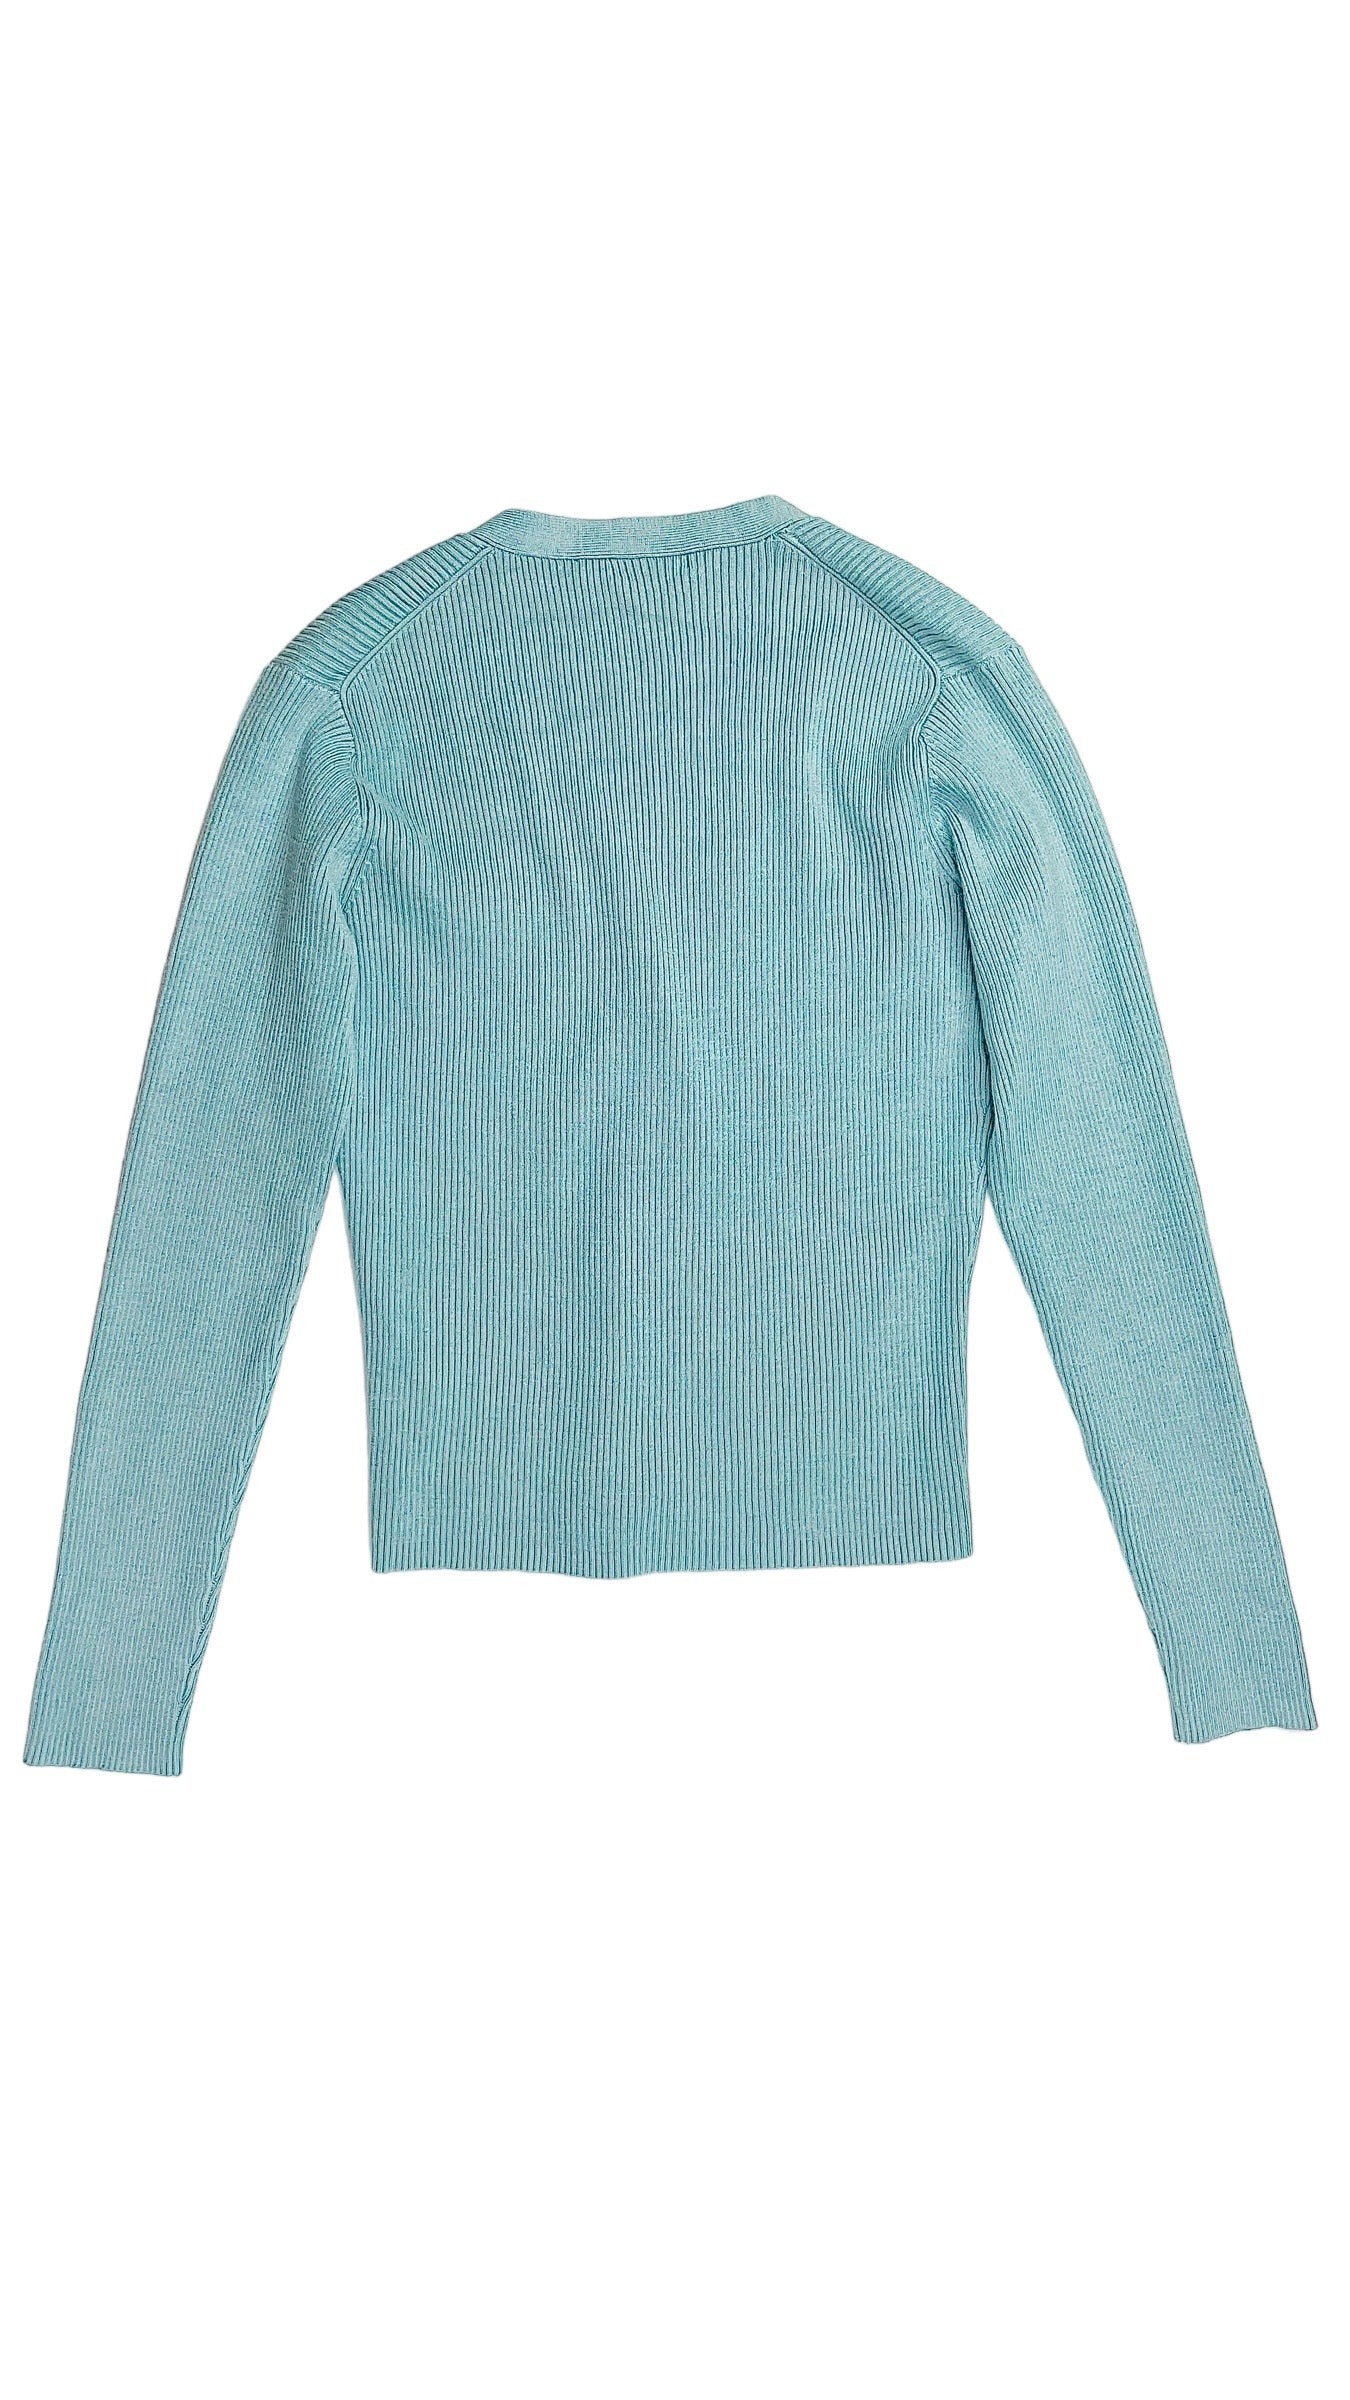 Vintage 90s sky blue ribbed knit cardigan - Size S